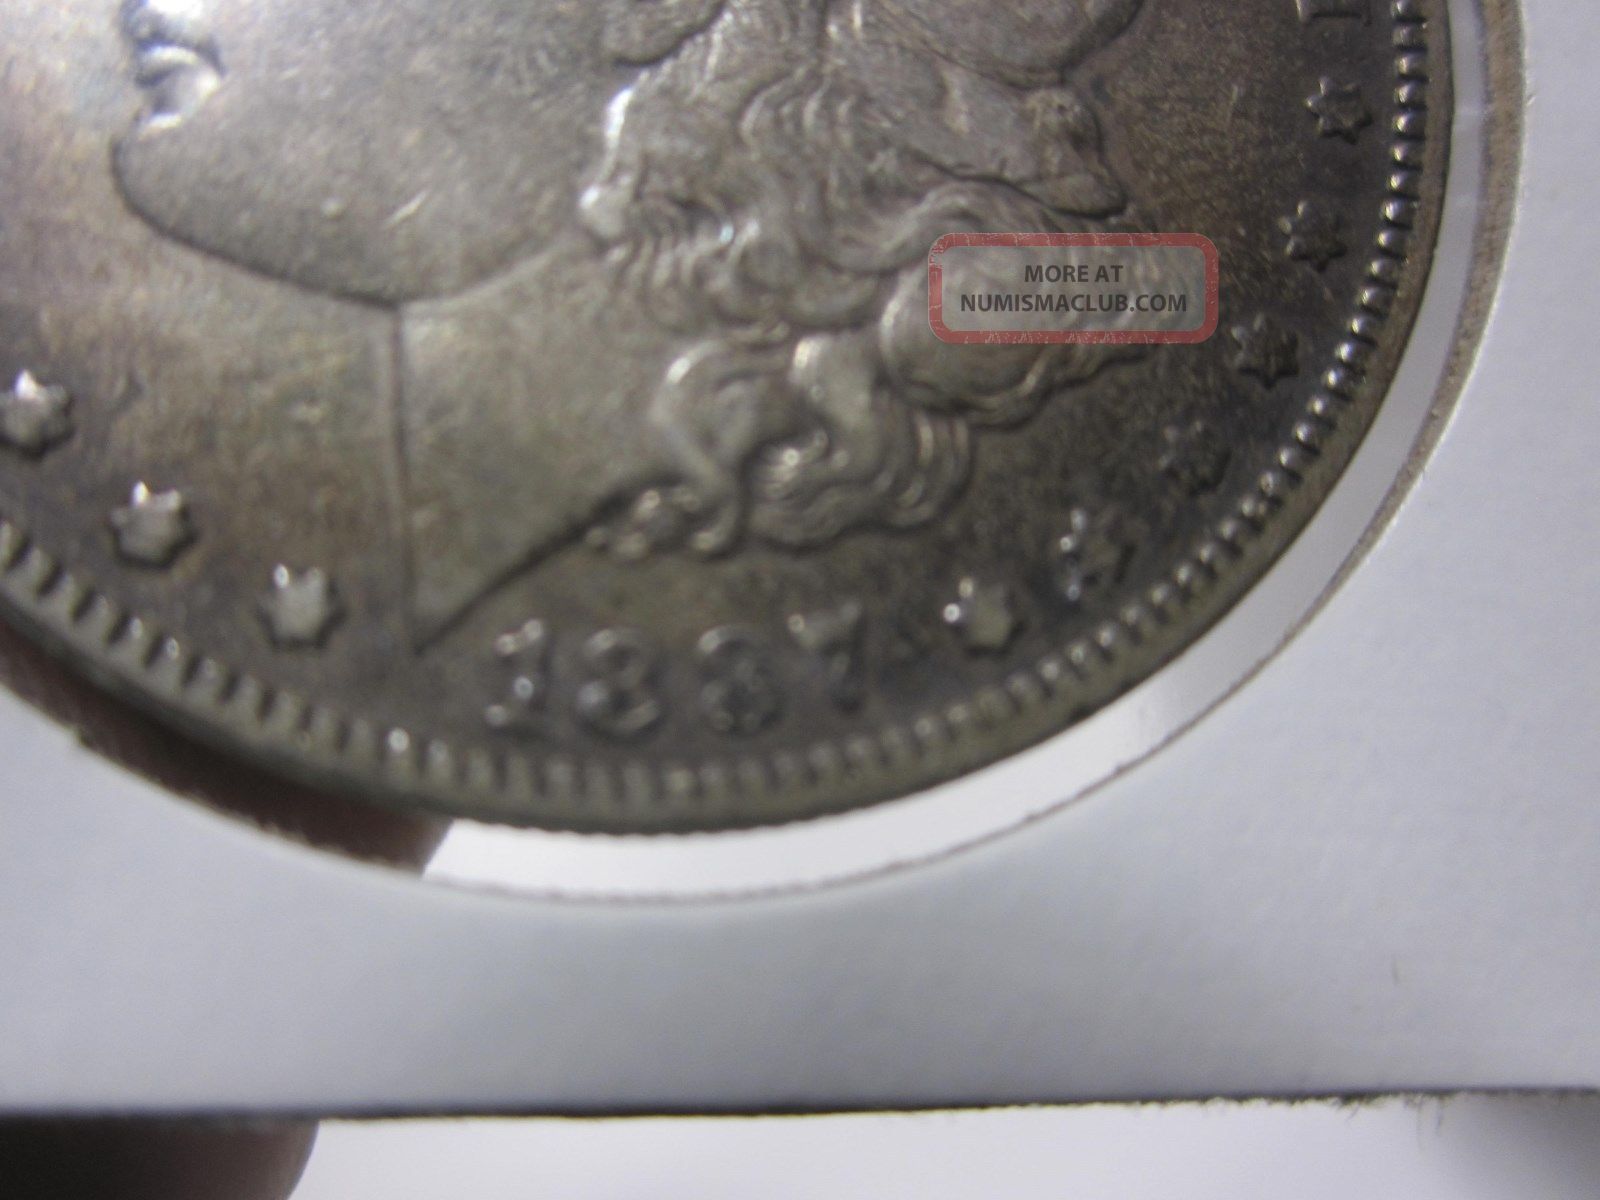 アンティークコイン 銀貨 1887 Morgan Silver Dollar $1 Coin PCGS MS